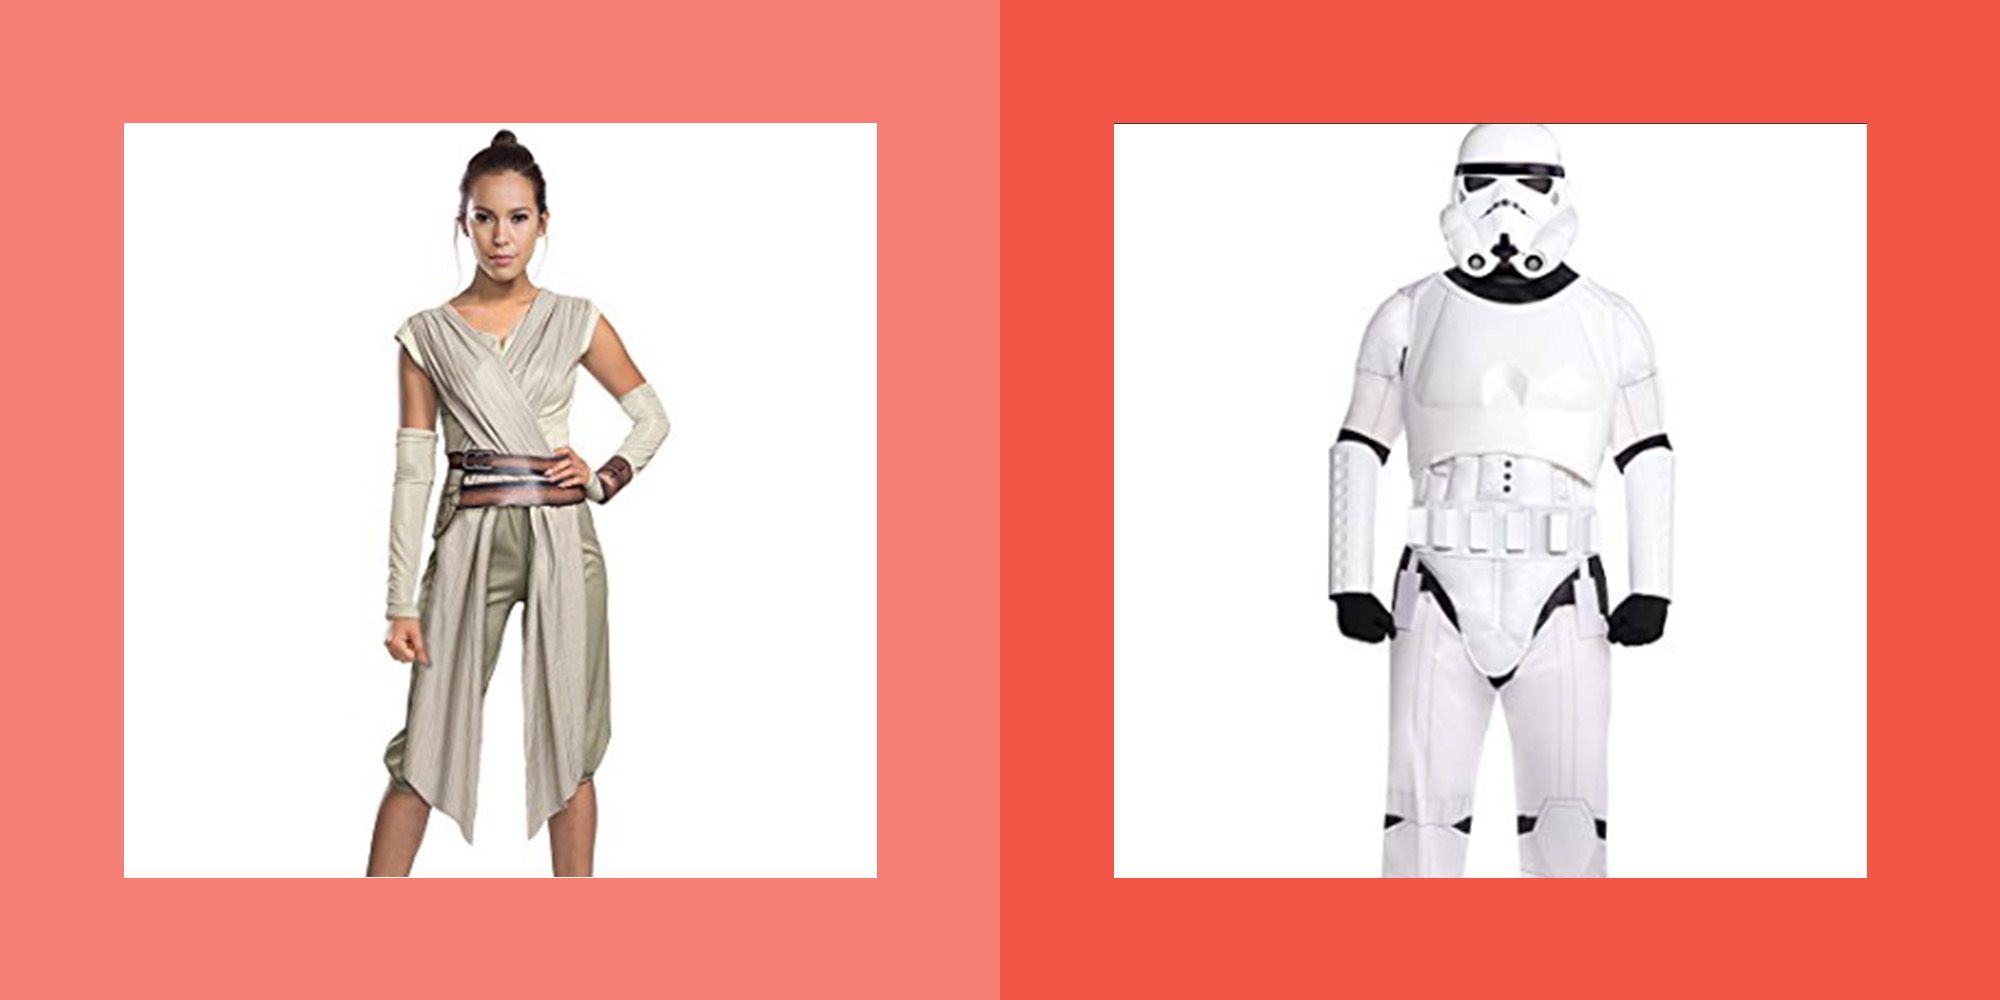 Cyclopen eten Noord 26 "Star Wars" Costumes — DIY "Star Wars" Costumes